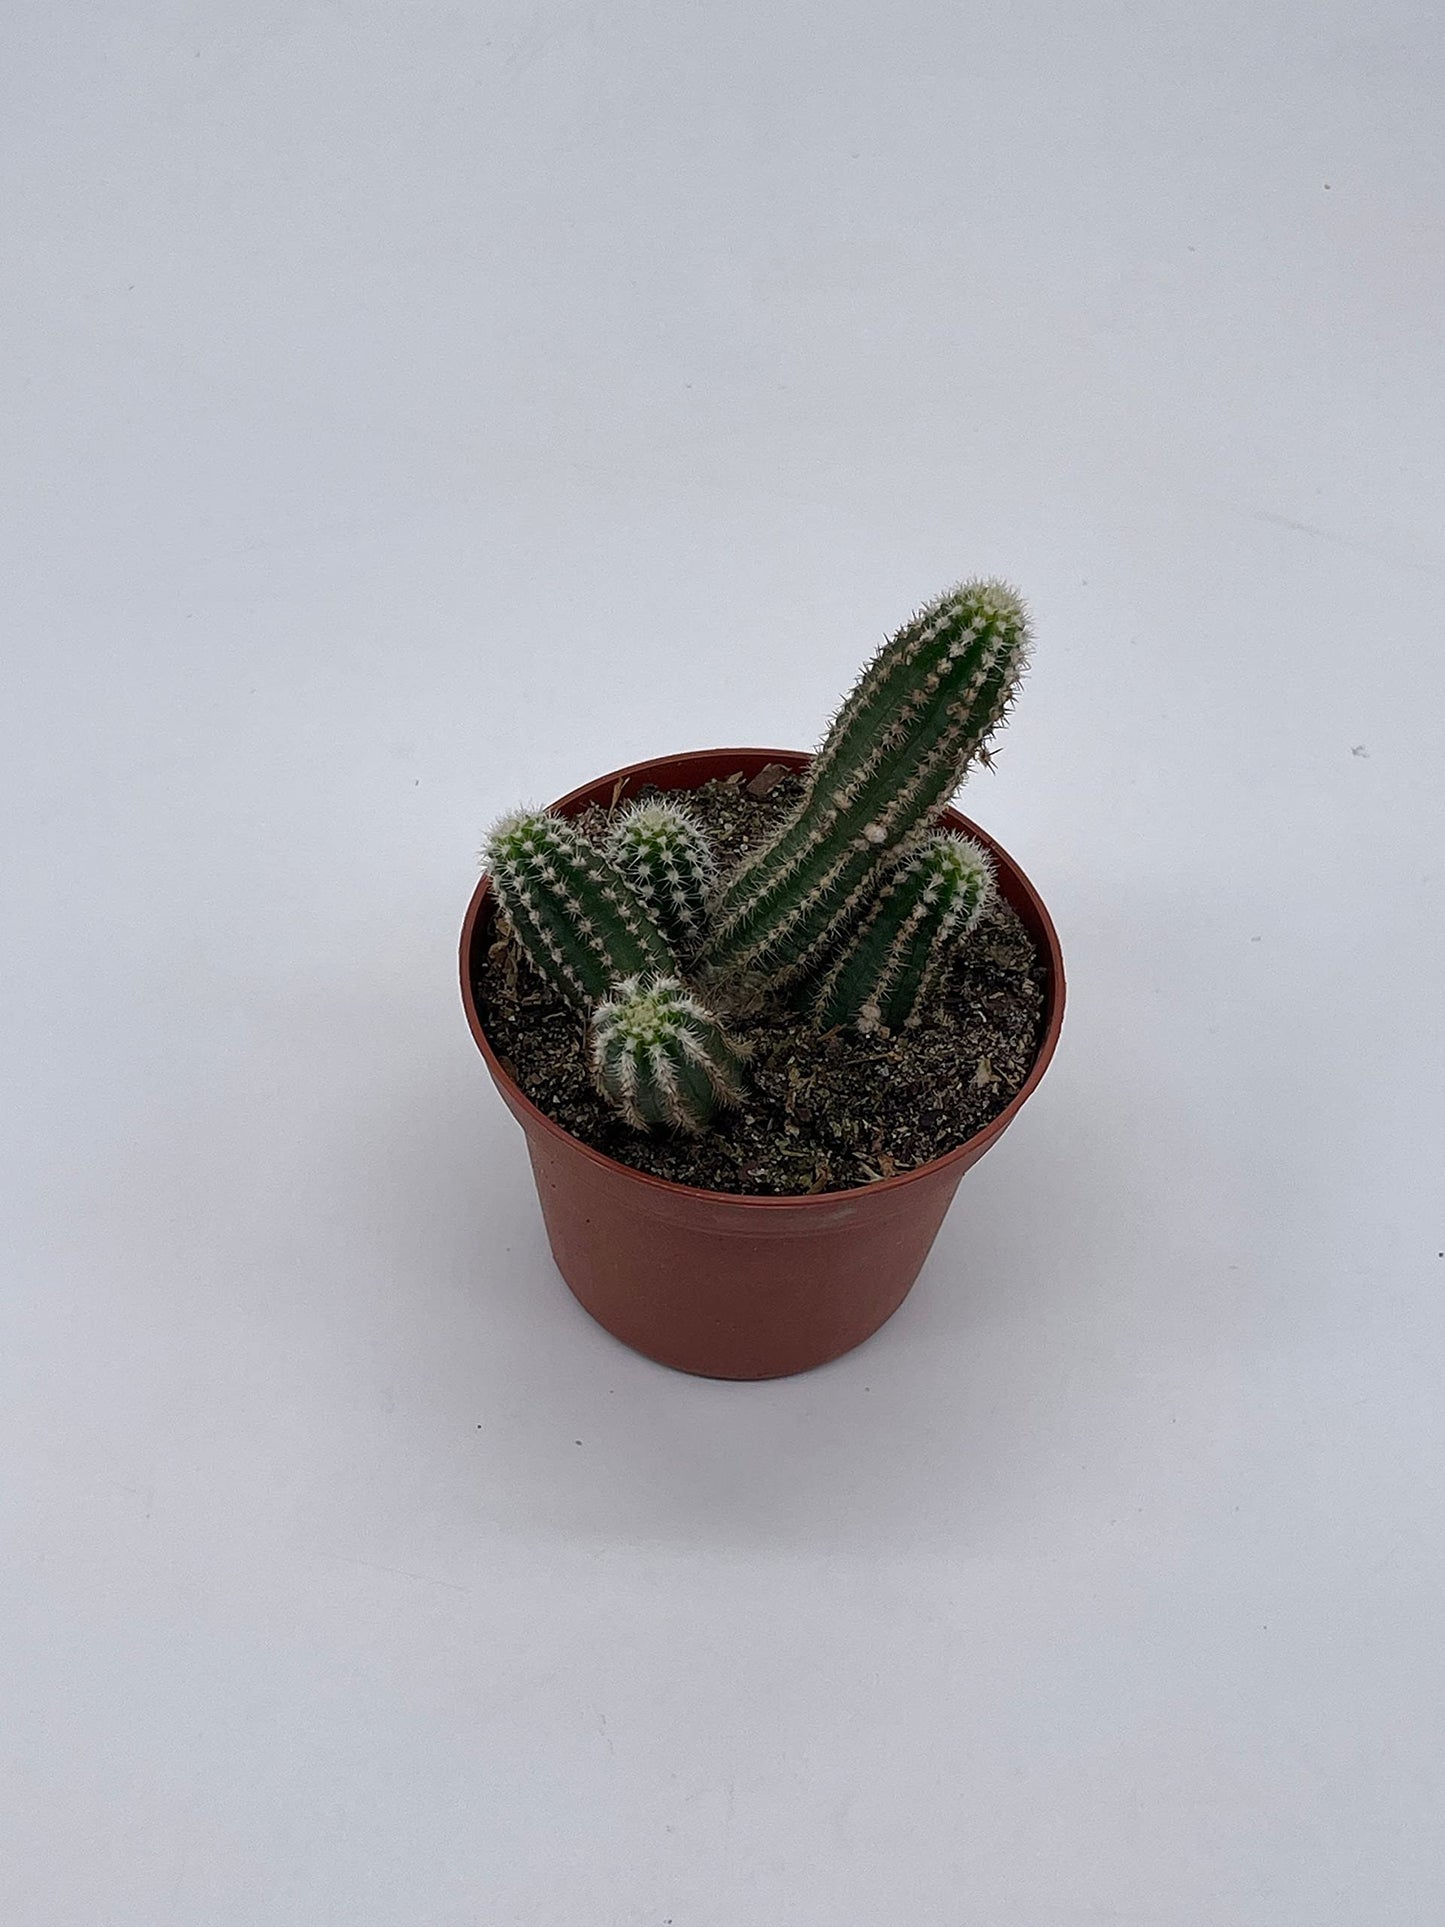 Peanut Cactus, 3 inch, Echinopsis Chamaecereus